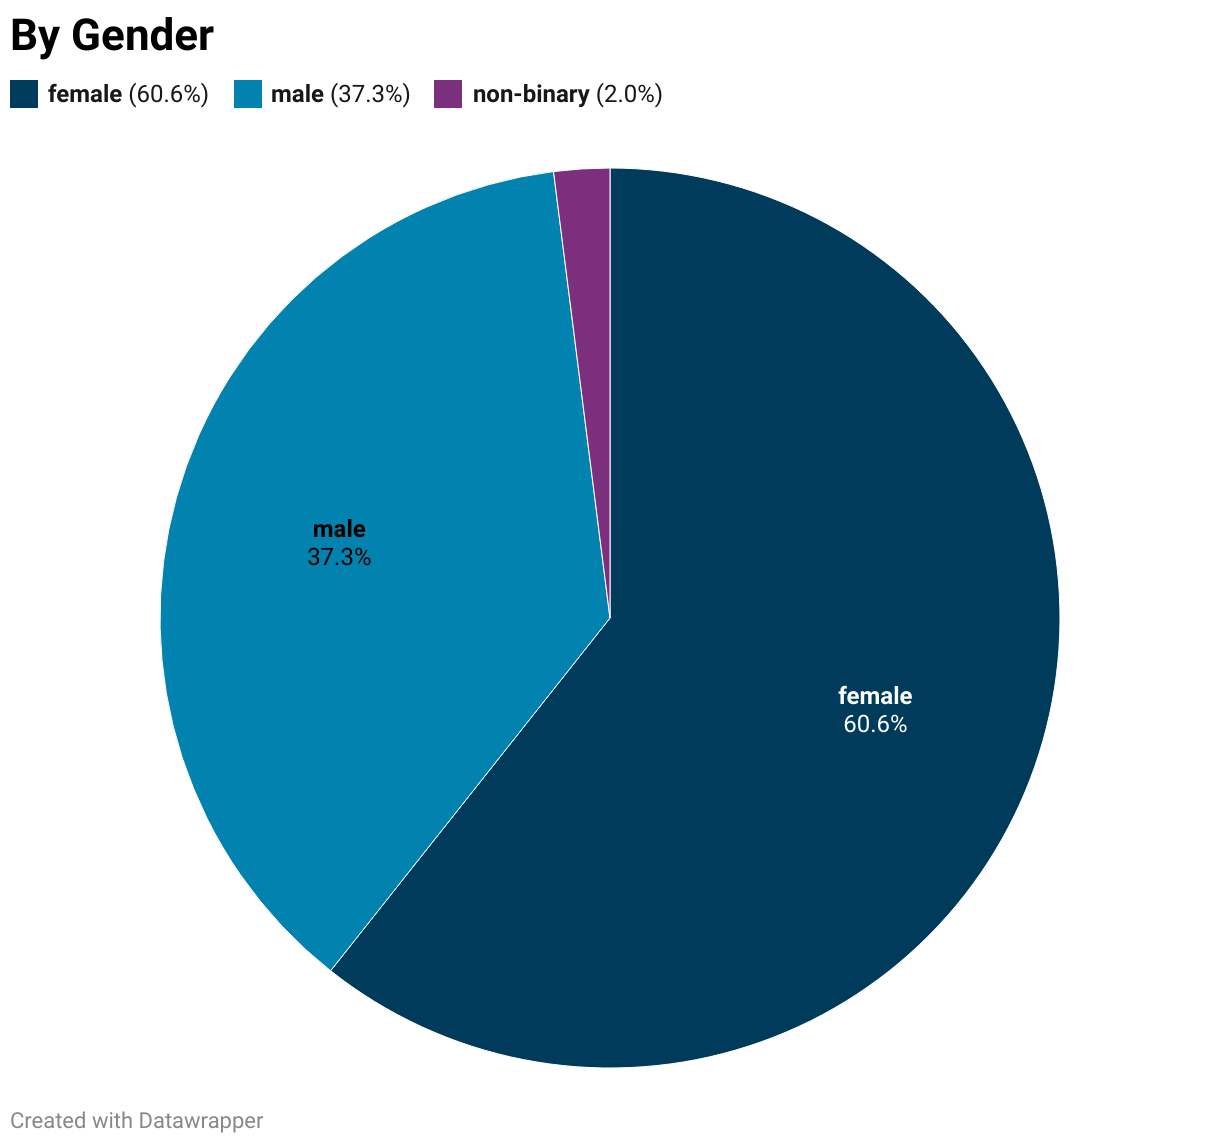 female;60.6%male:37.3%non-binary:2%